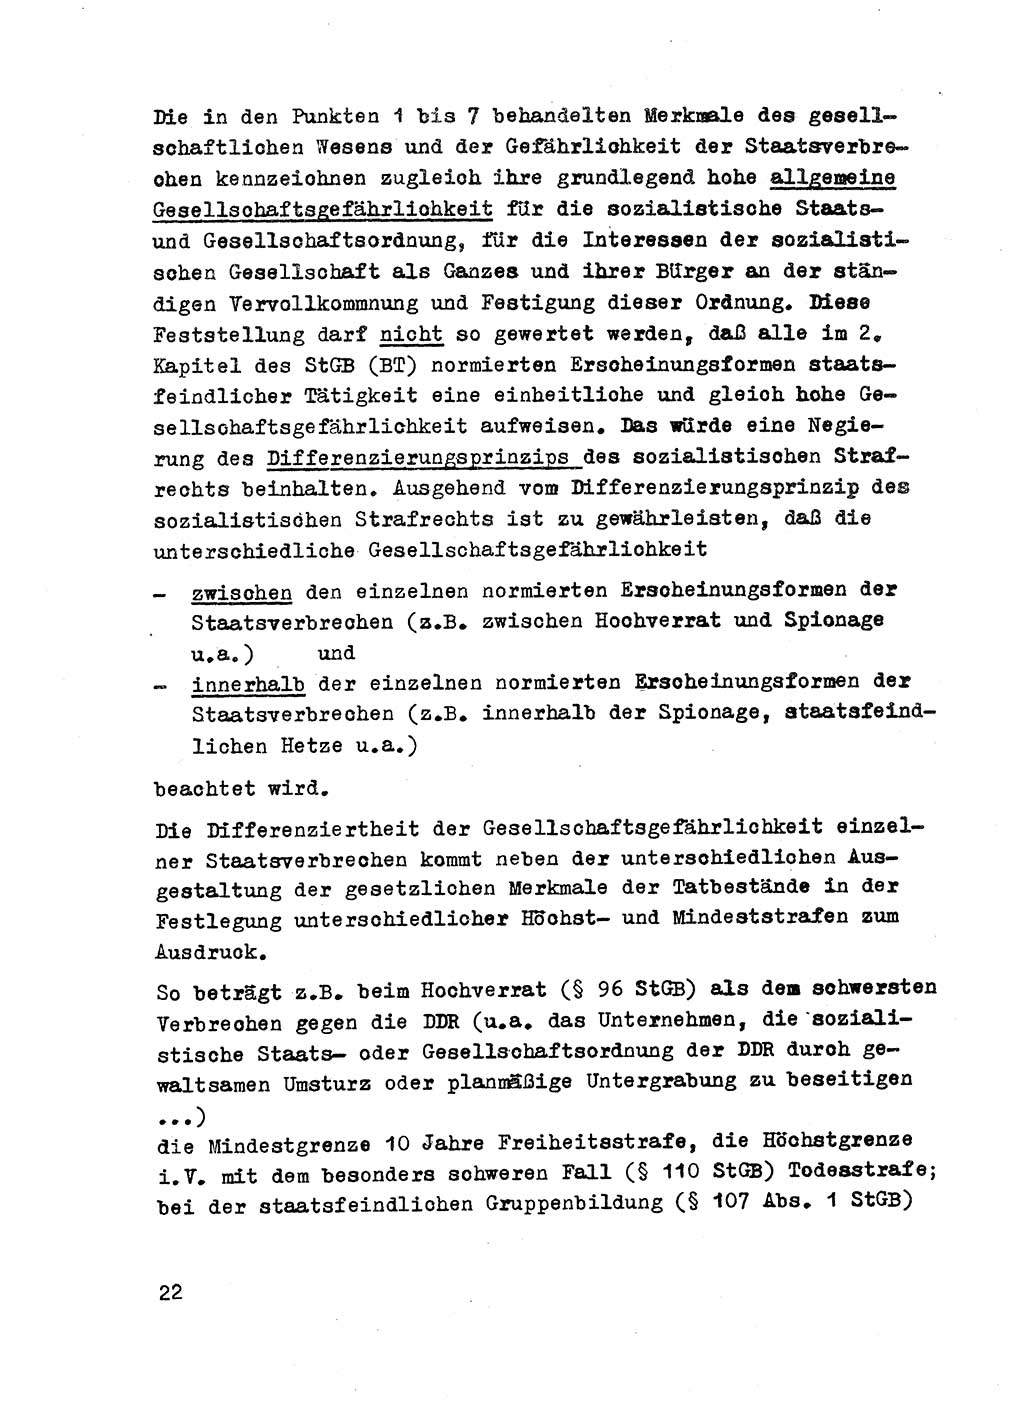 Strafrecht der DDR (Deutsche Demokratische Republik), Besonderer Teil, Lehrmaterial, Heft 2 1969, Seite 22 (Strafr. DDR BT Lehrmat. H. 2 1969, S. 22)